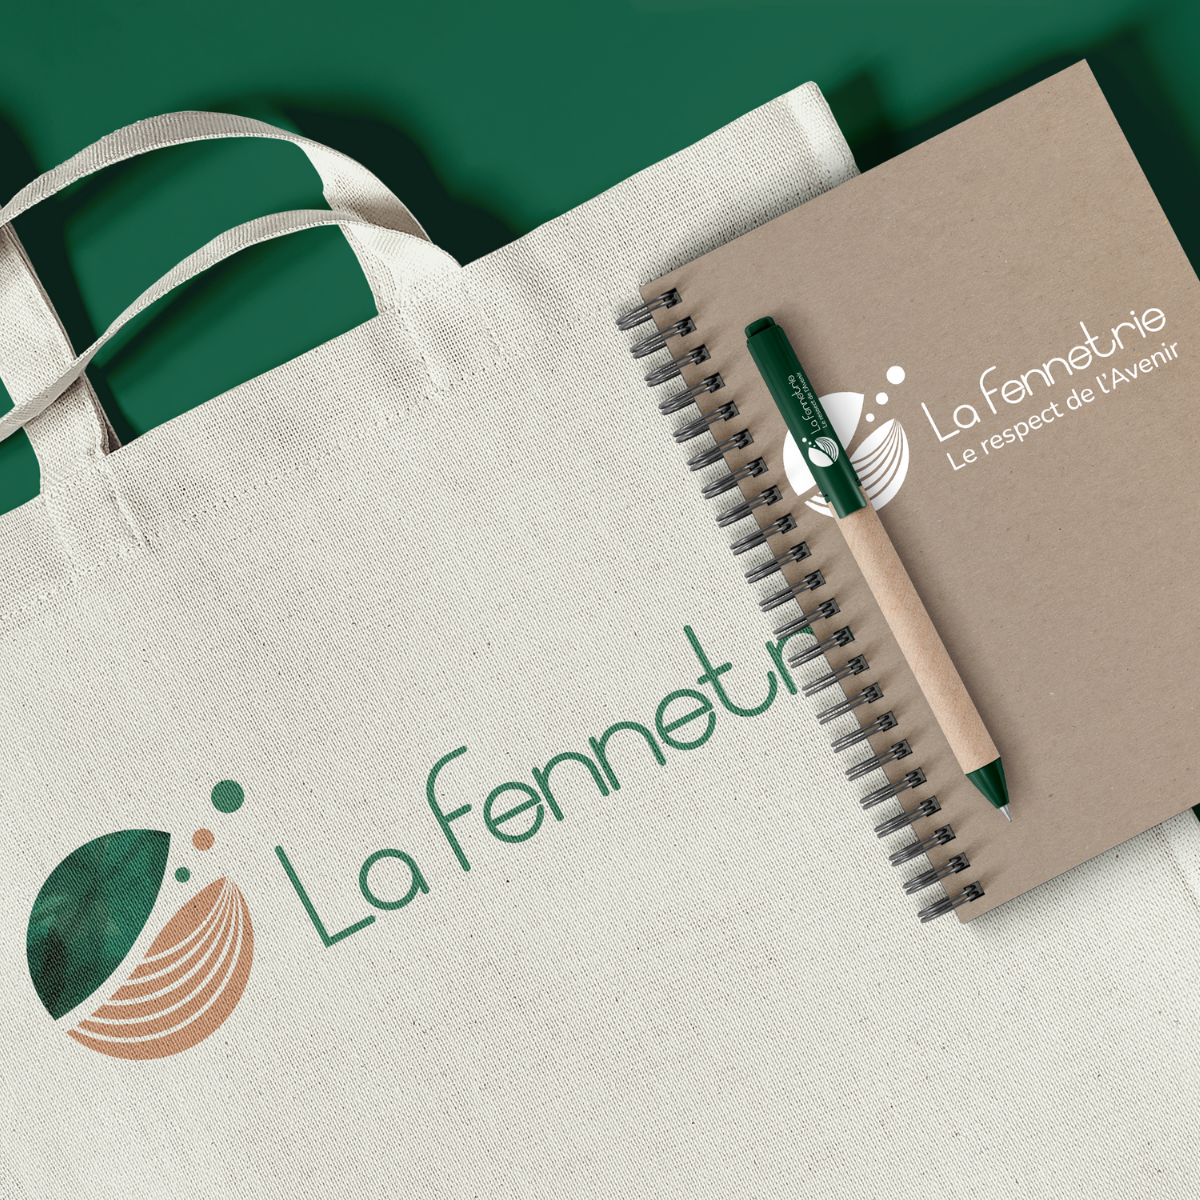 La-fennetrie-branding10